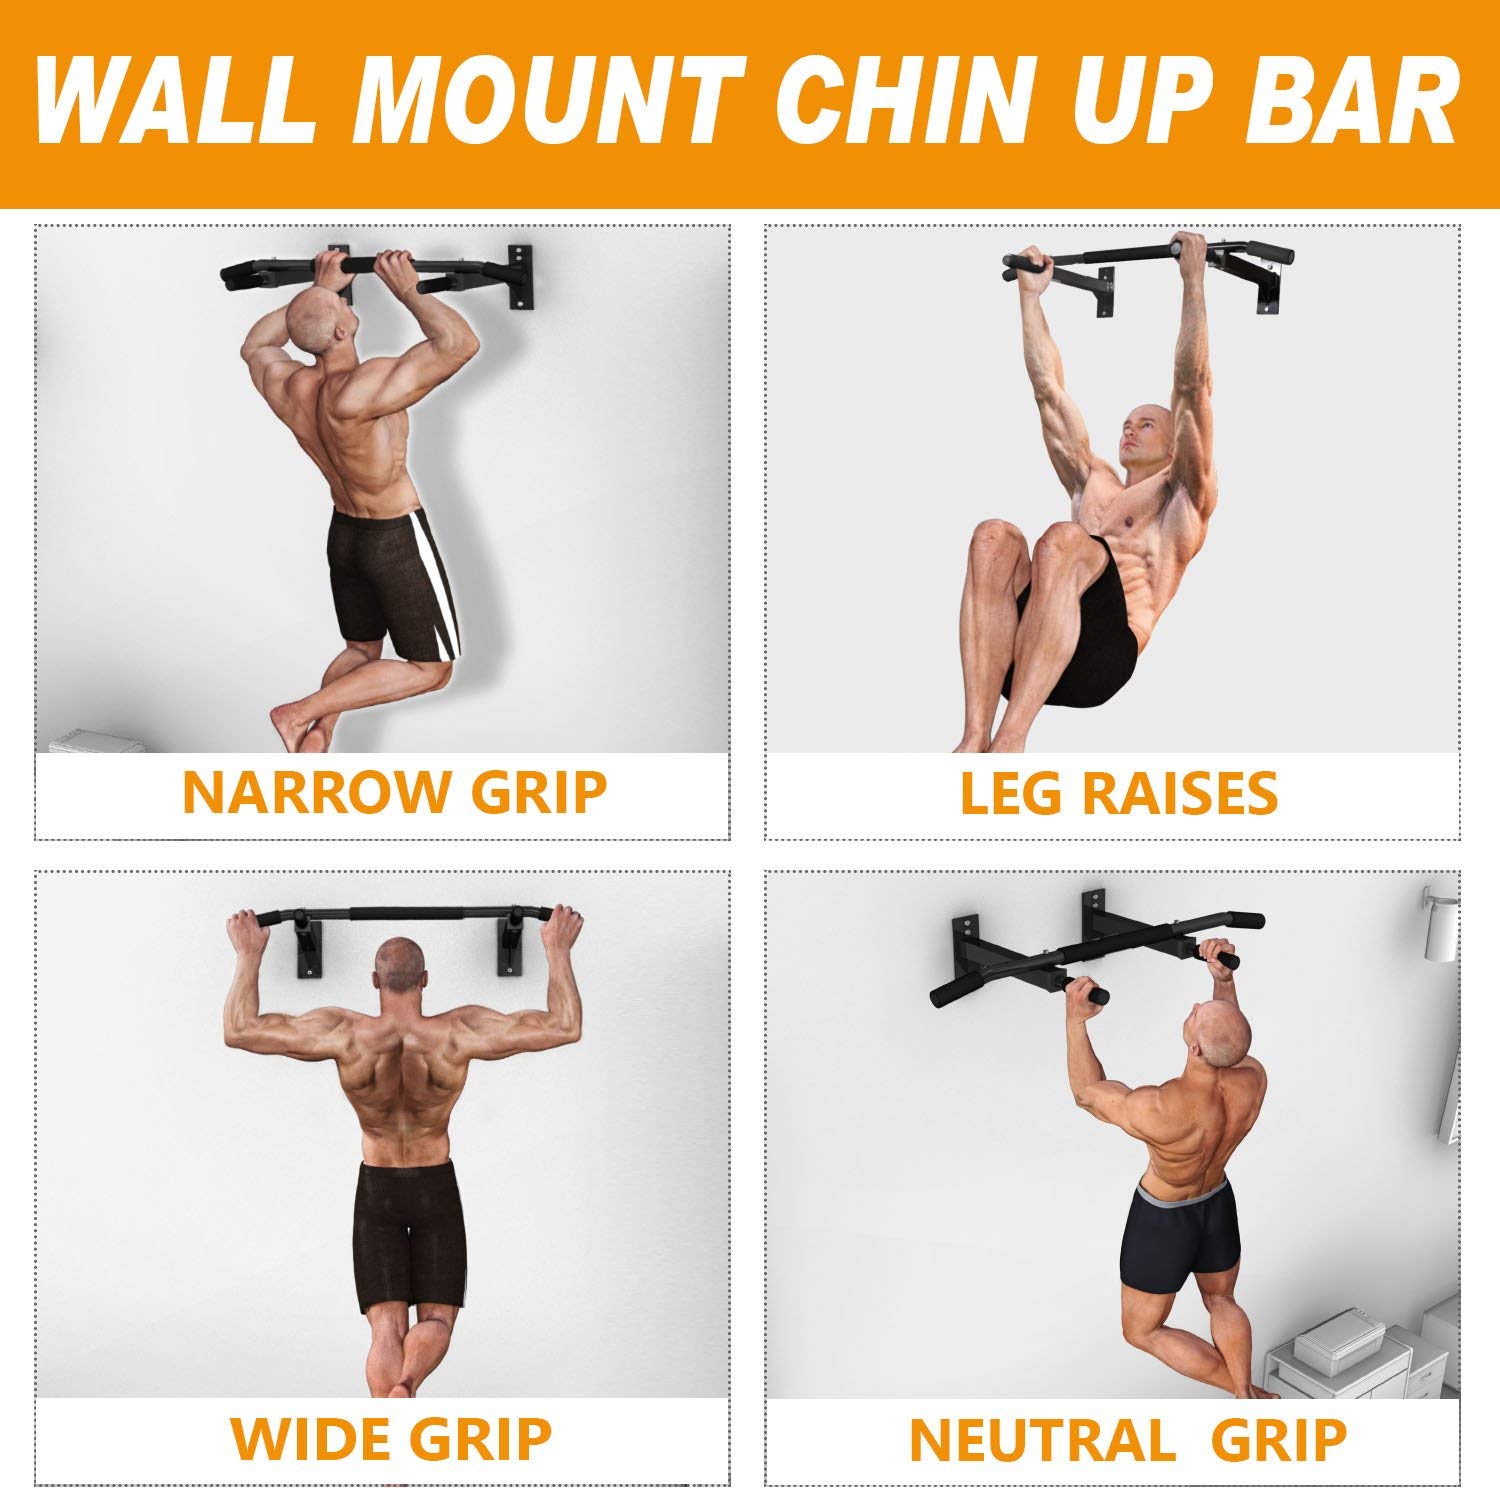 Wall mounted pull up bar - various usage